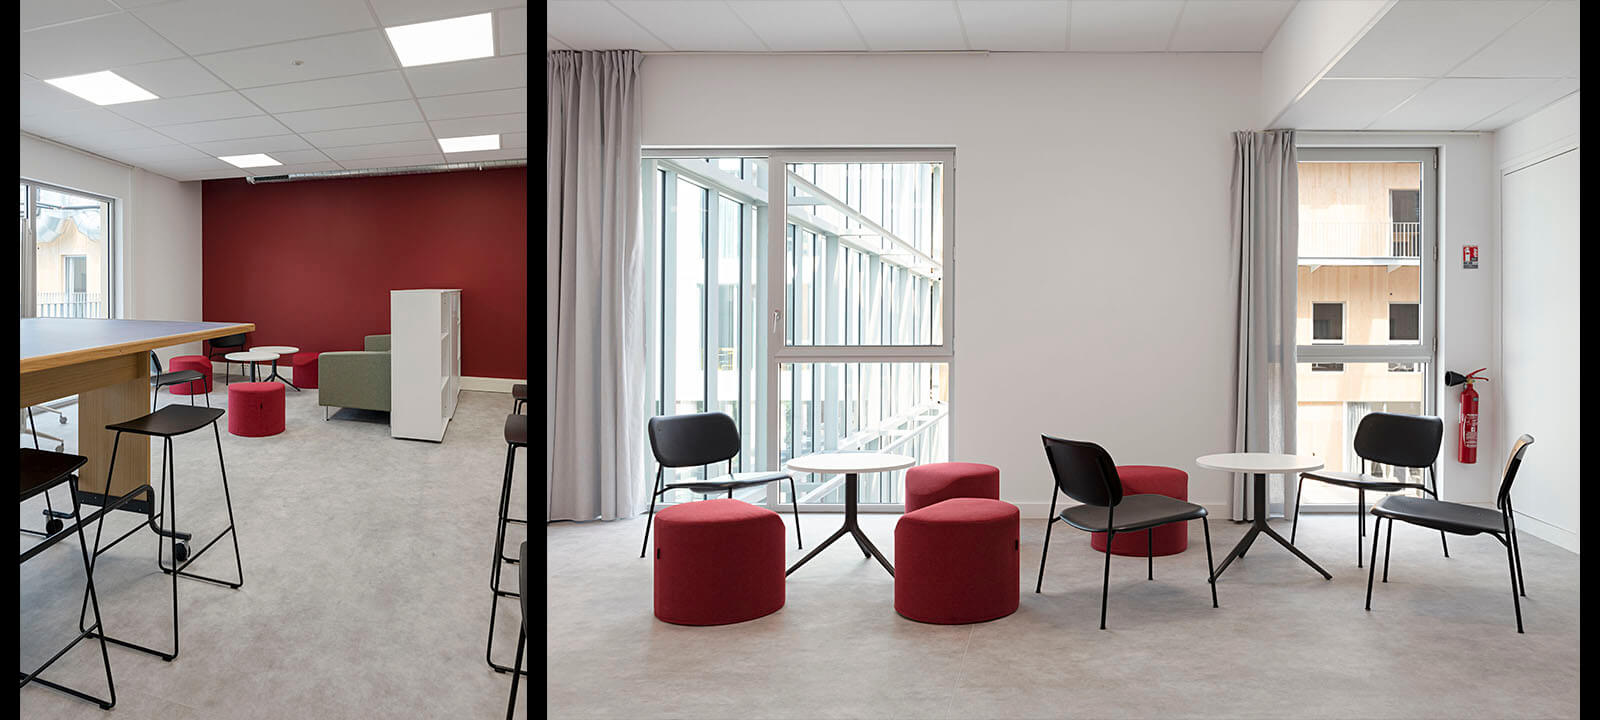 Photo d'architecture intérieur des espaces travail de l'école de design de Nantes par Gwenaelle Hoyet Atlantique pour IDM